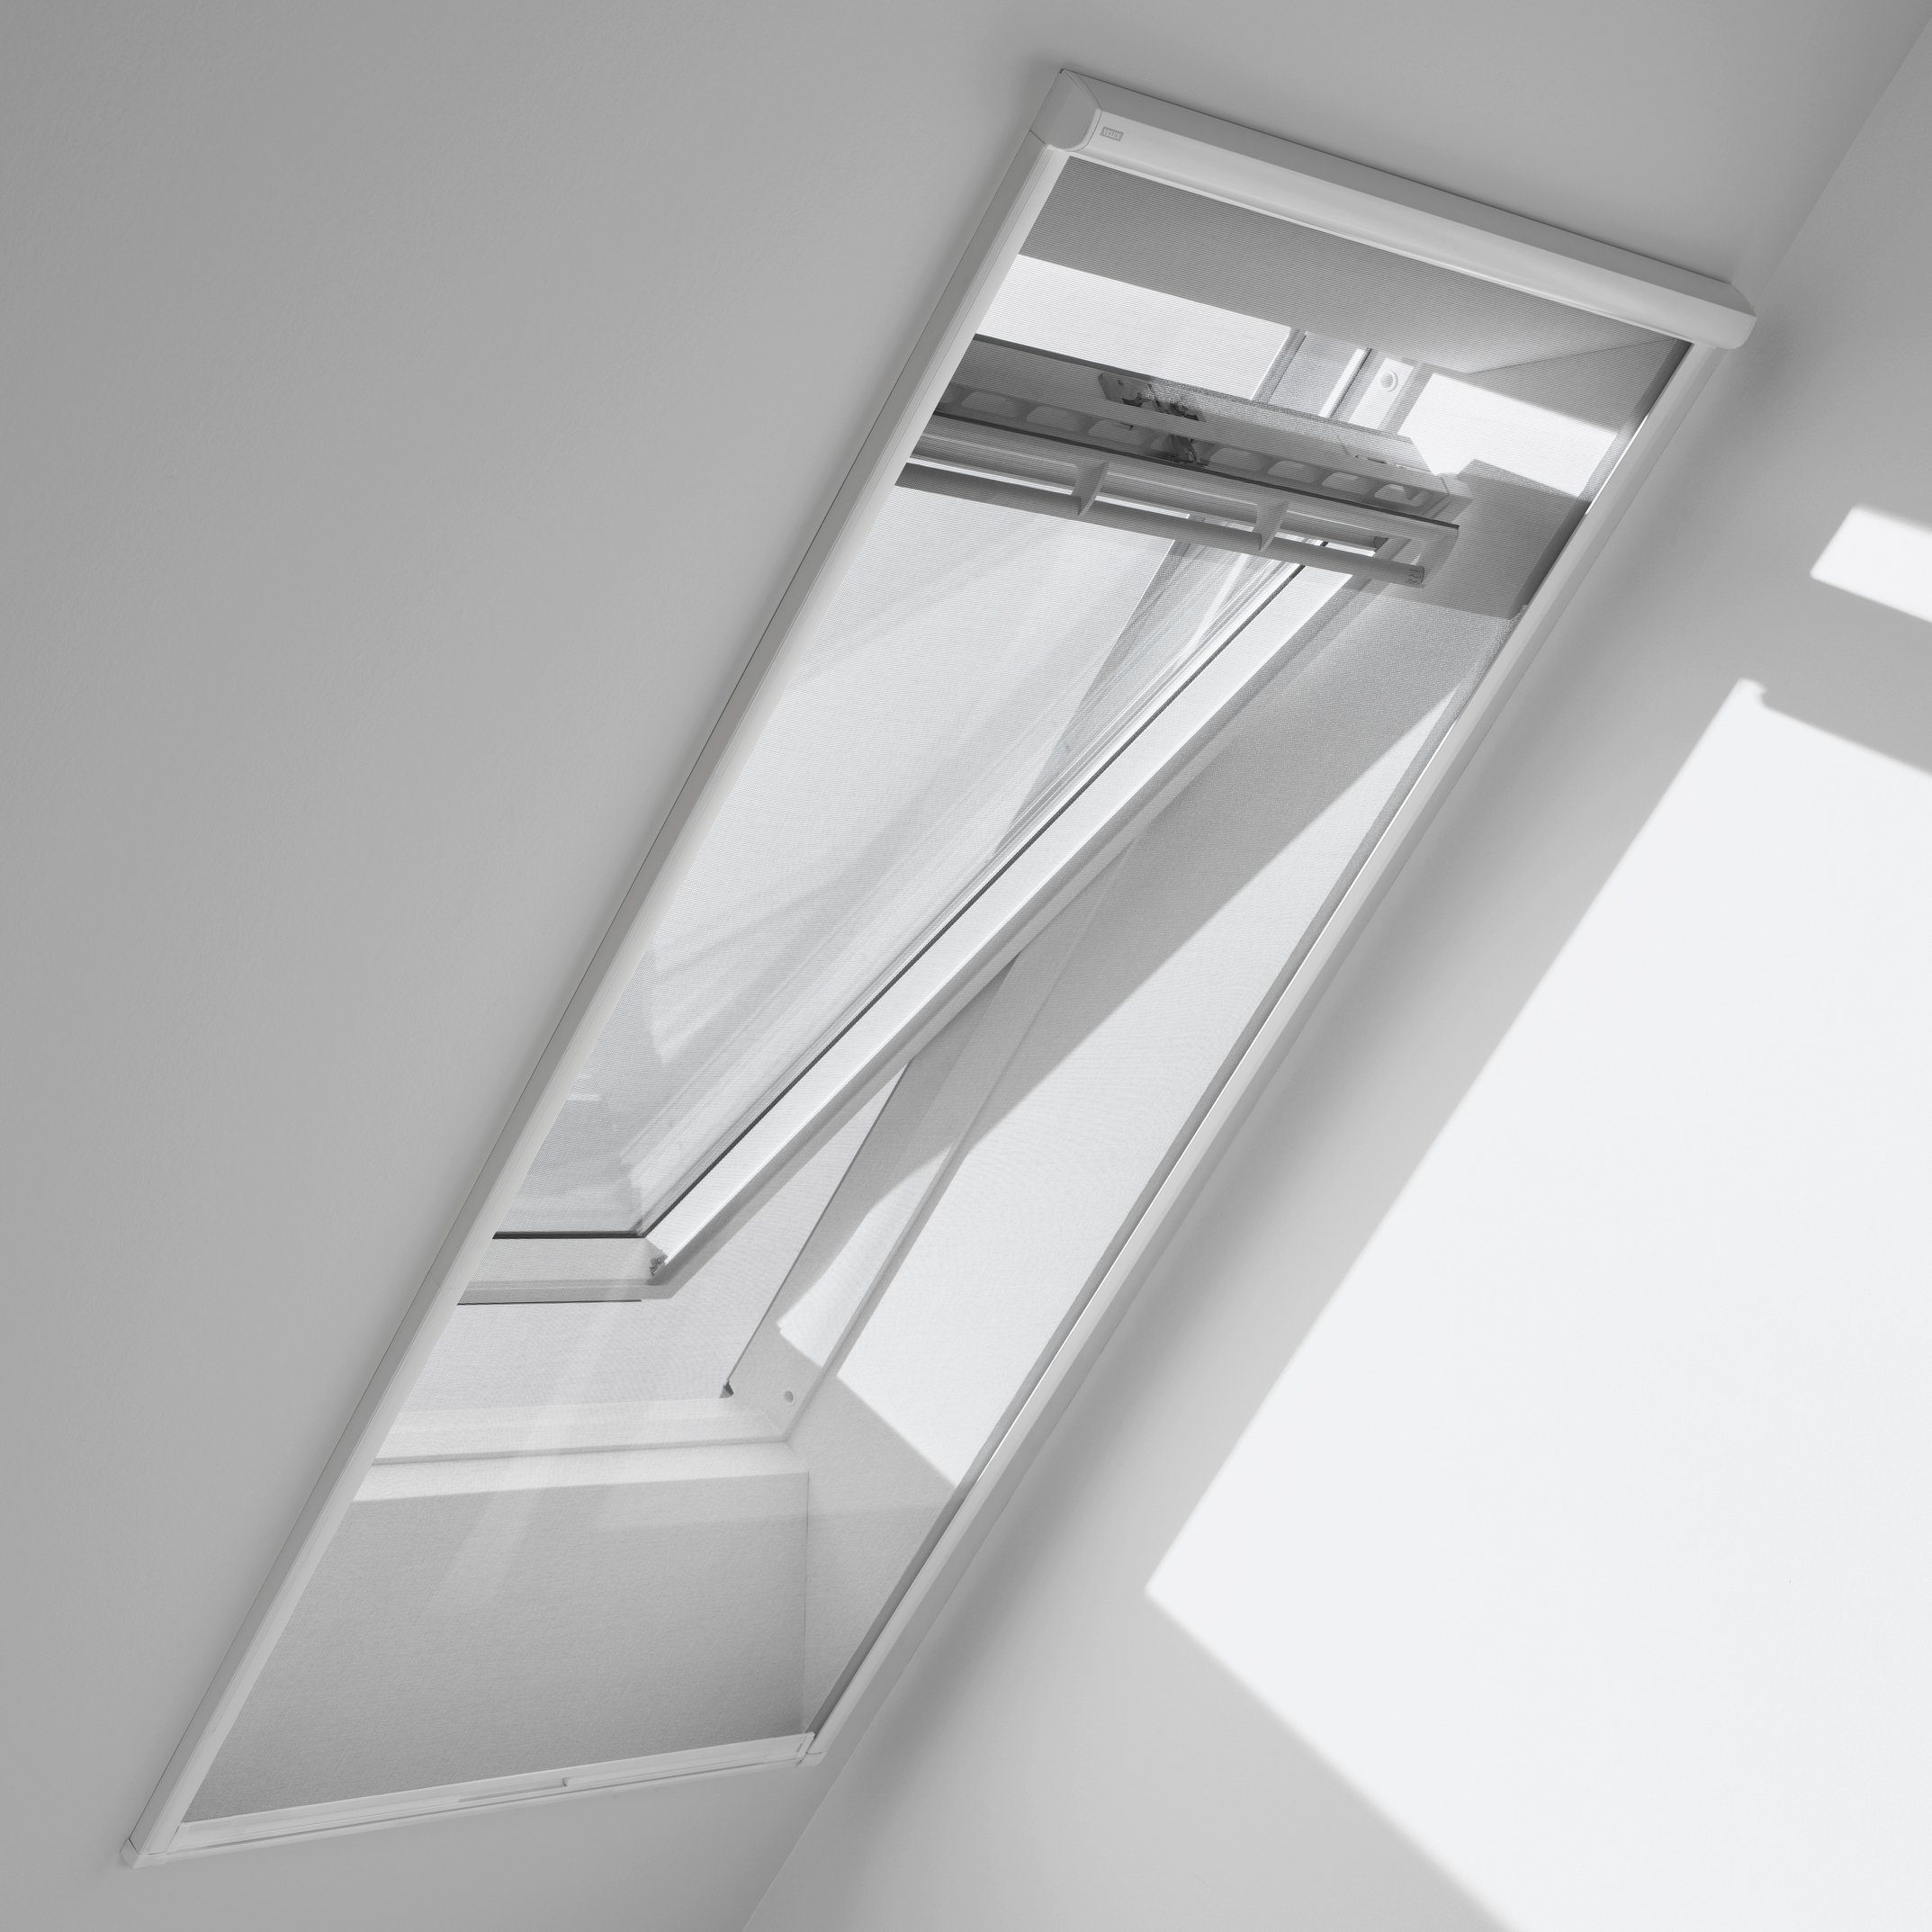 Insektenschutzrollo für Dachfenster, ZIL CK06 0000SWL, VELUX, transparent, verschraubt, für max. Dachausschnitt: 530 x 2000 mm